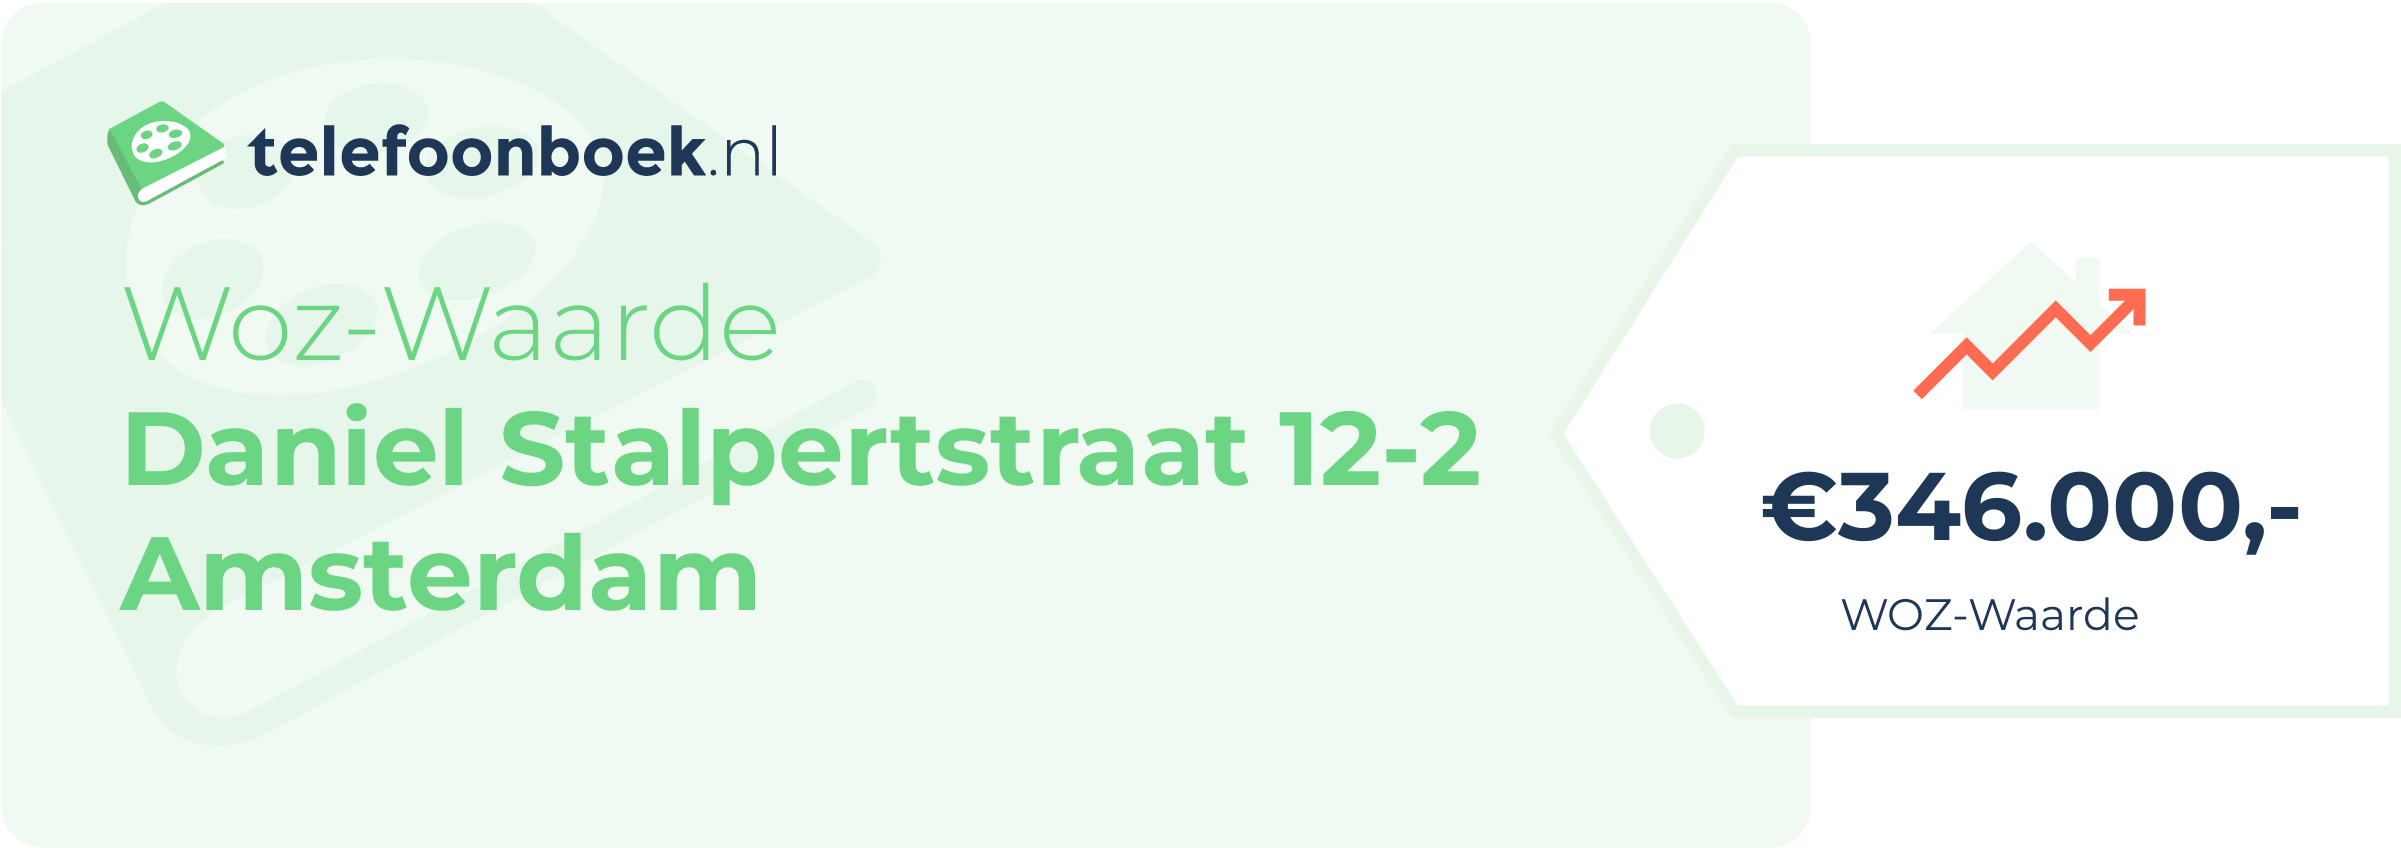 WOZ-waarde Daniel Stalpertstraat 12-2 Amsterdam